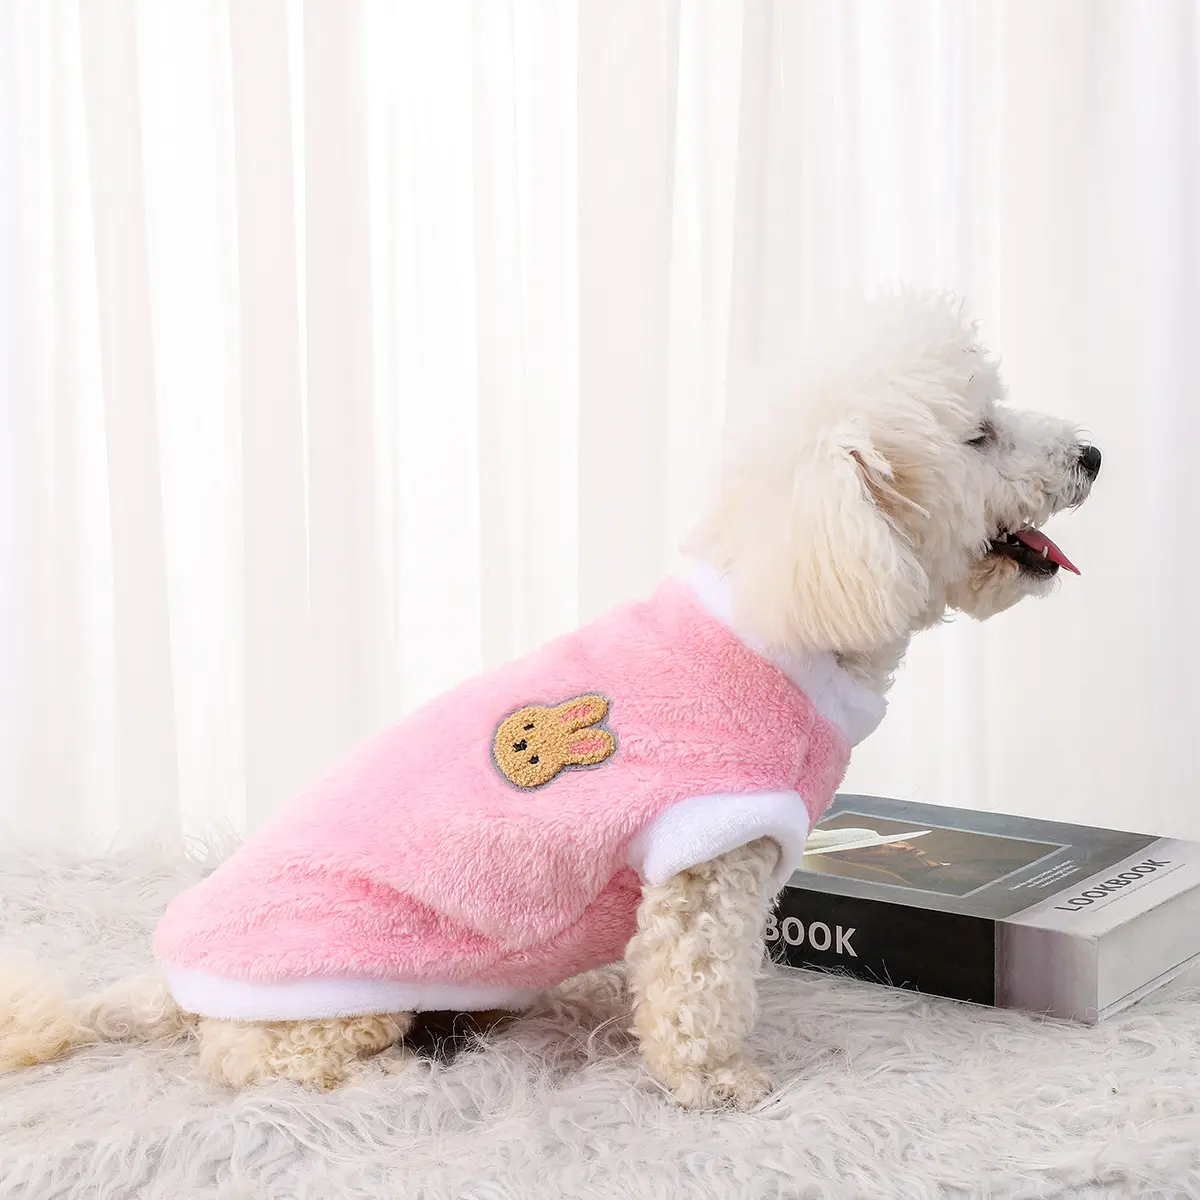 Bienvenido a 100 algodón personalizado Xl Xxs Xxxs Xxx ropa de invierno para perros pequeños al por mayor ropa cálida para perros ropa para mascotas